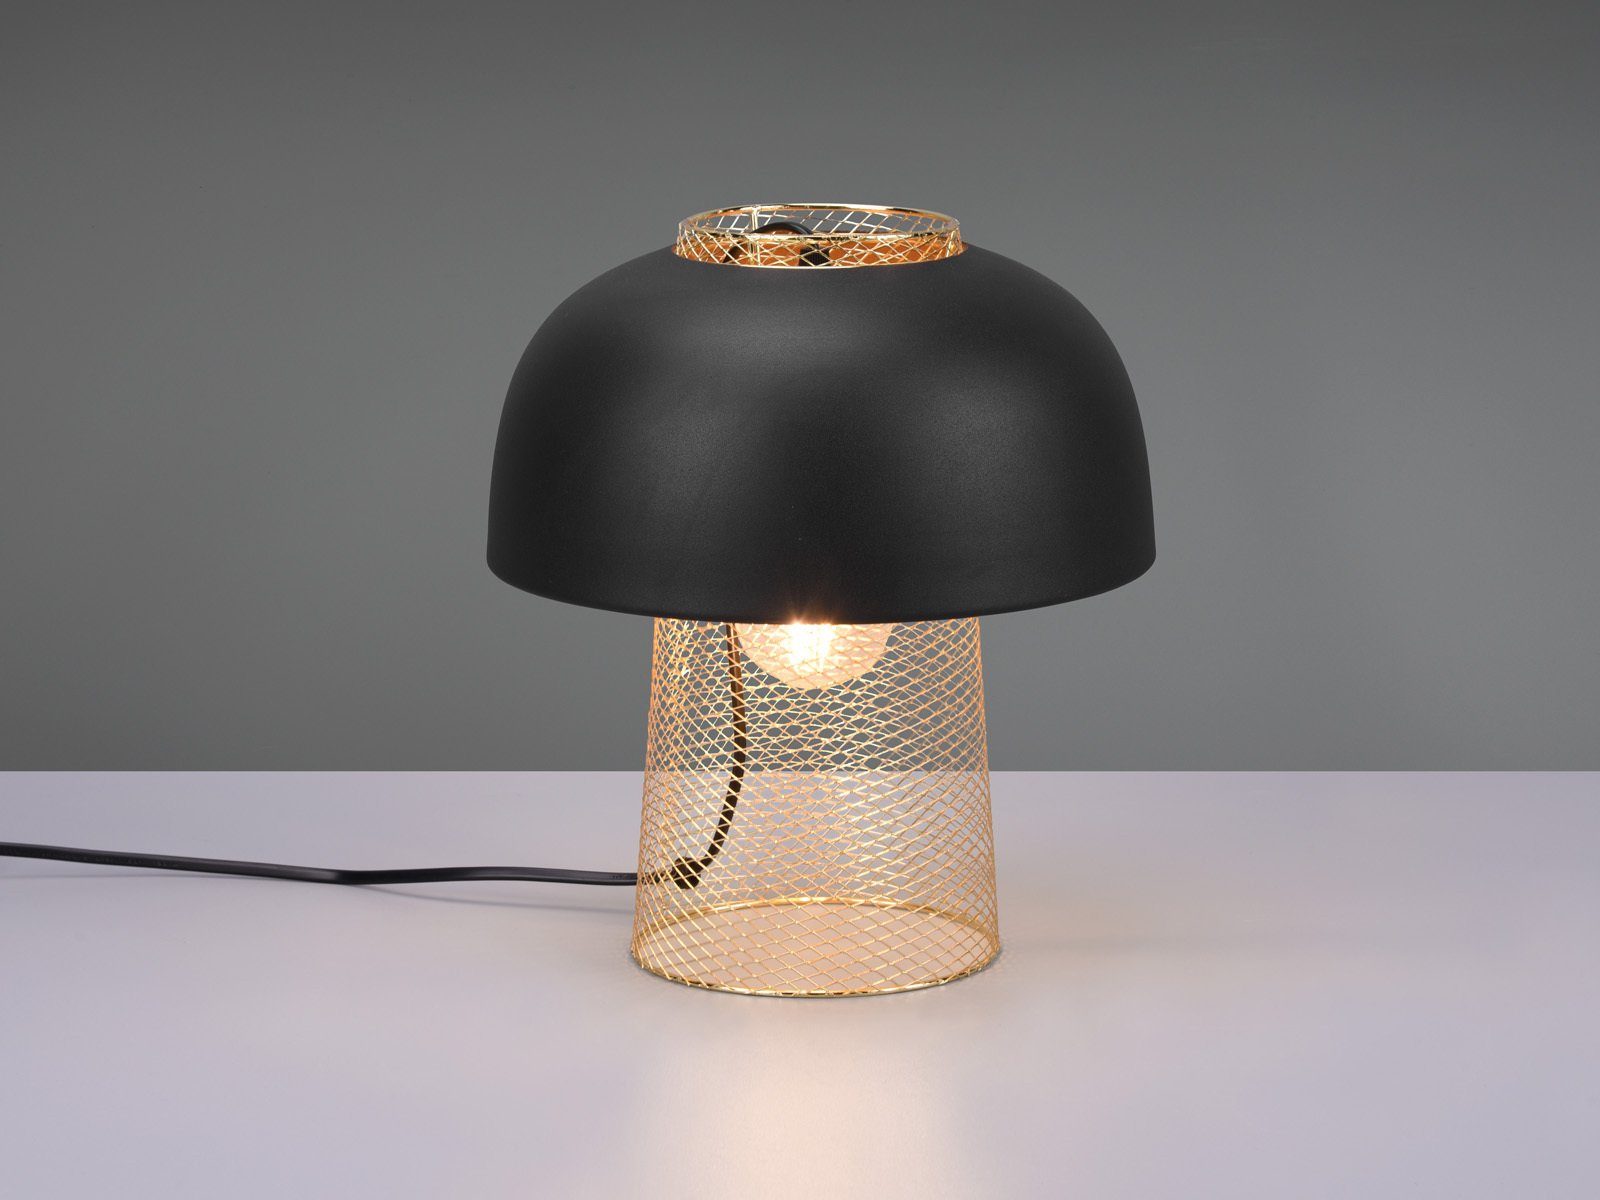 Fensterbank Industrial H: kleine Nachttischlampe, LED 28 warmweiß, Schwarz meineWunschleuchte Gold wechselbar, für LED dimmbar Pilzlampe